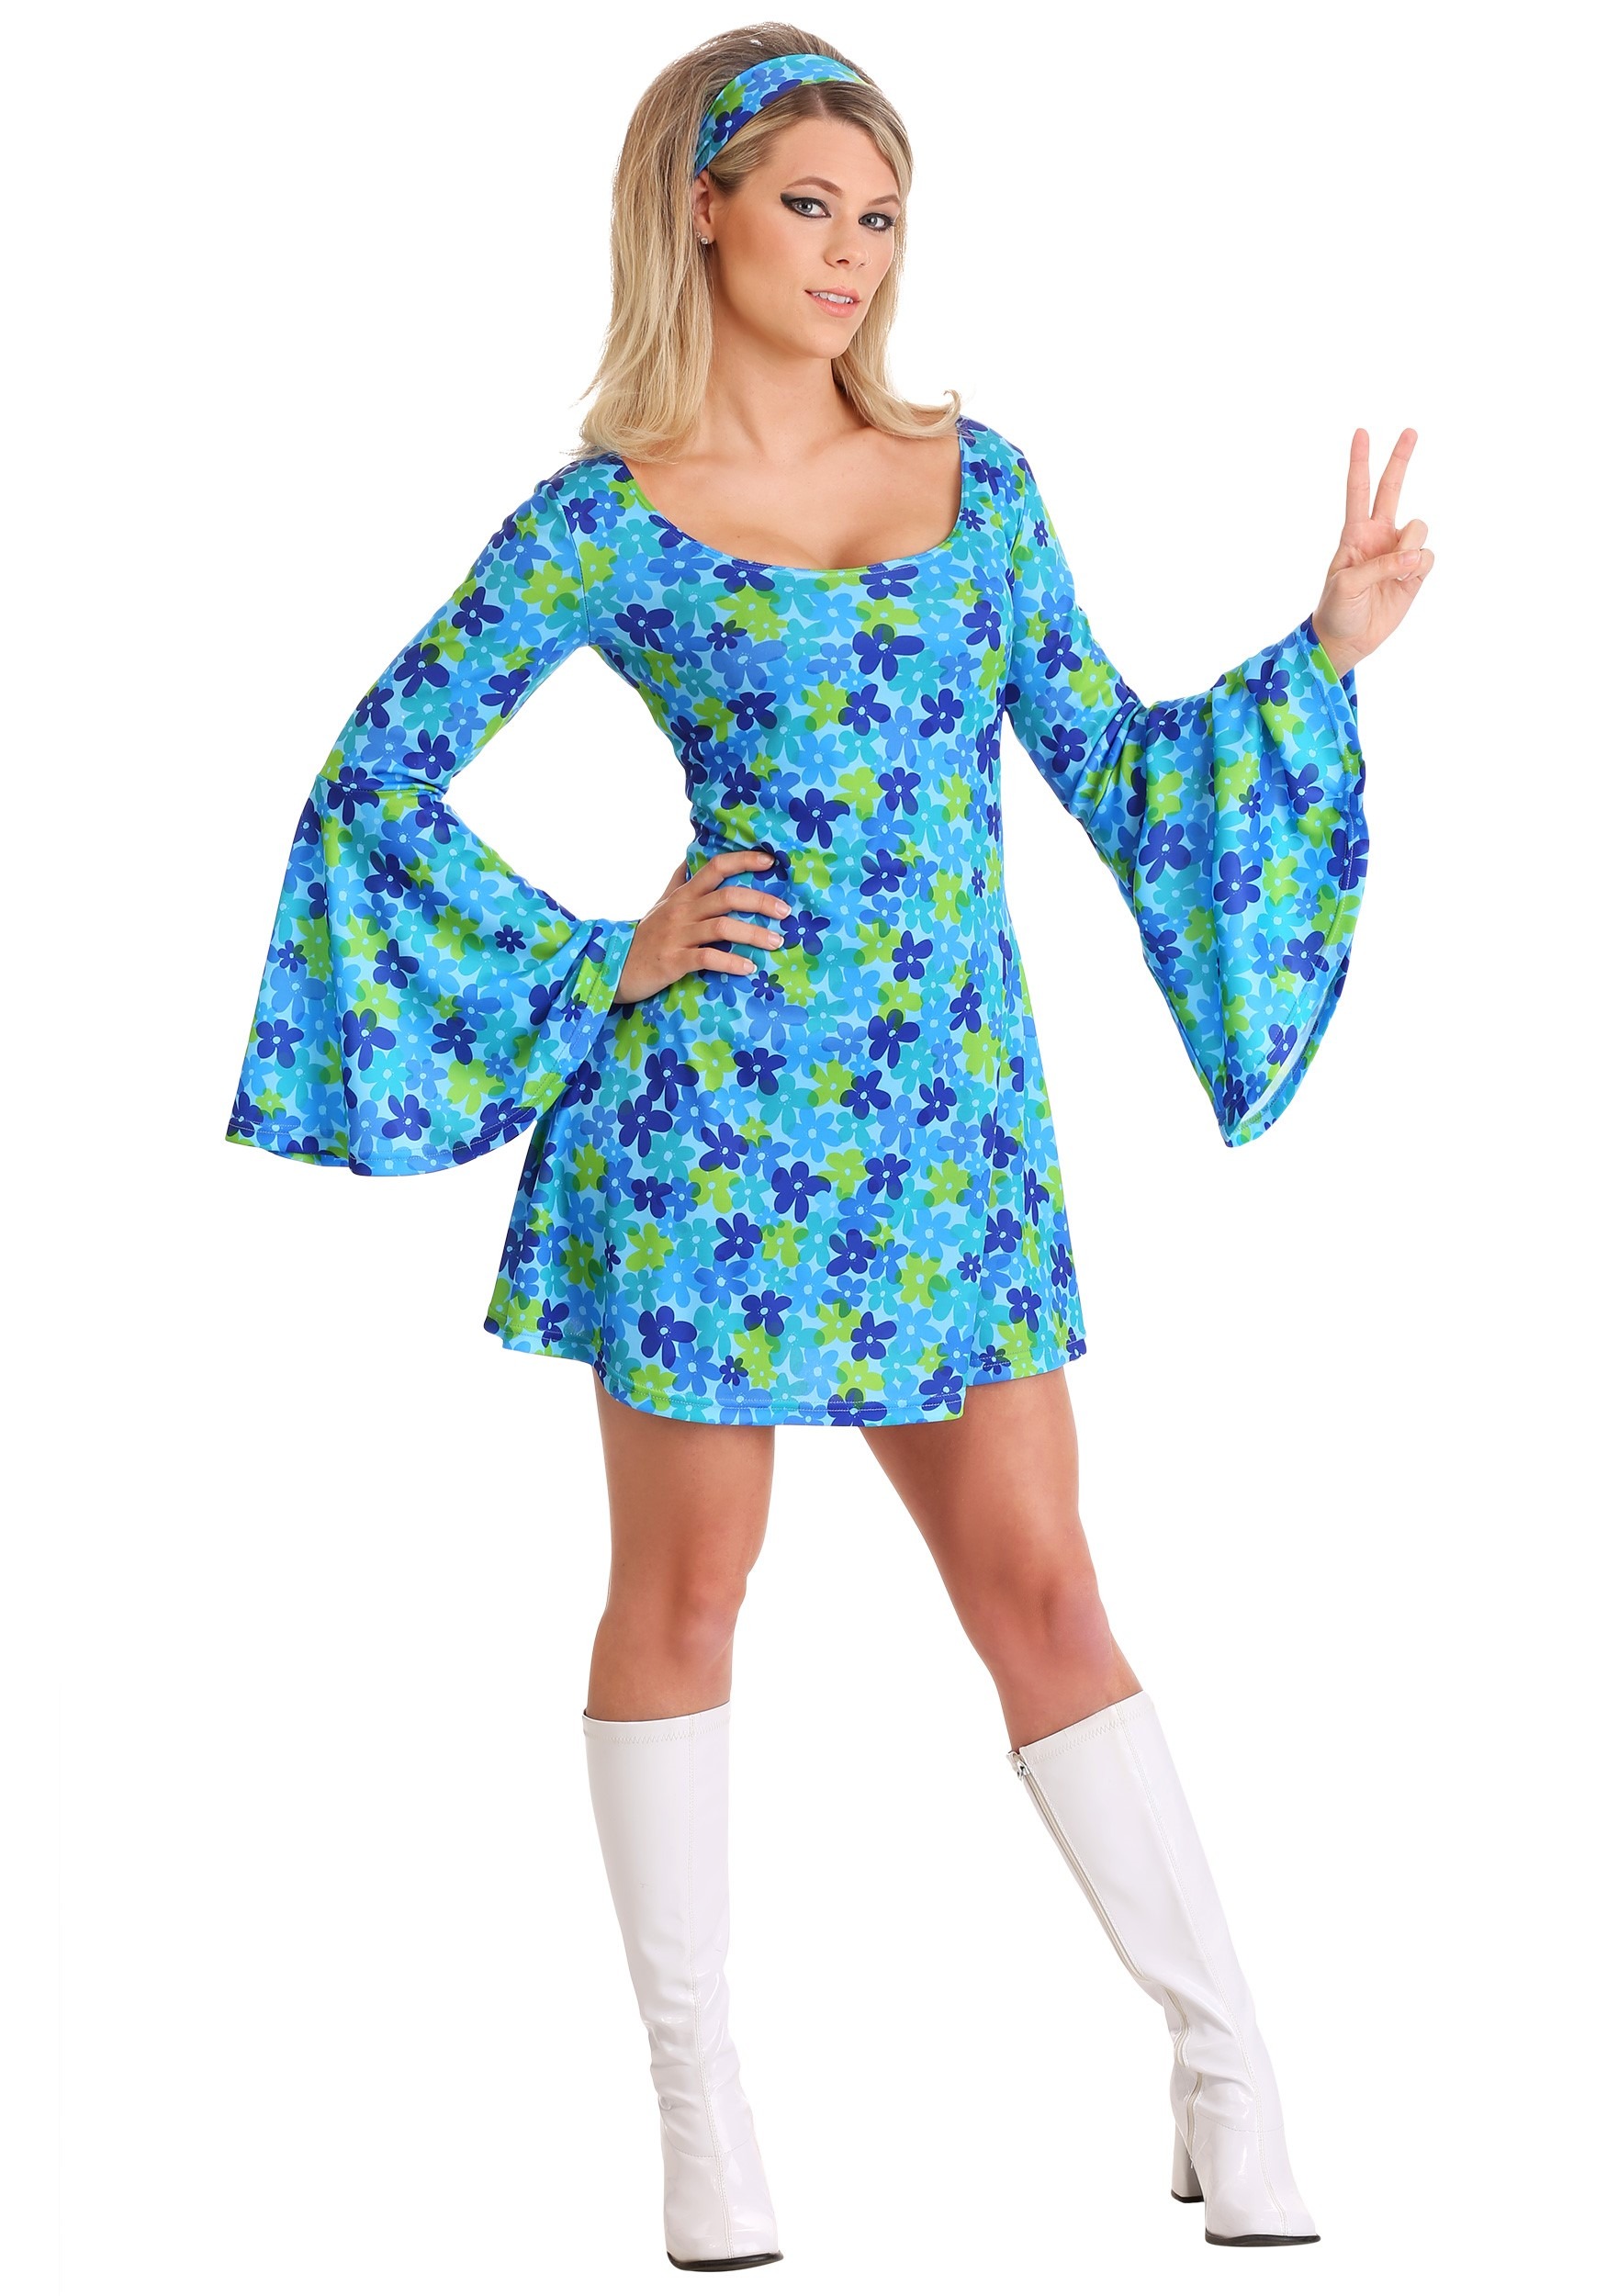 Wild Flower 70s Hippie Dress Fancy Dress Costume For Women